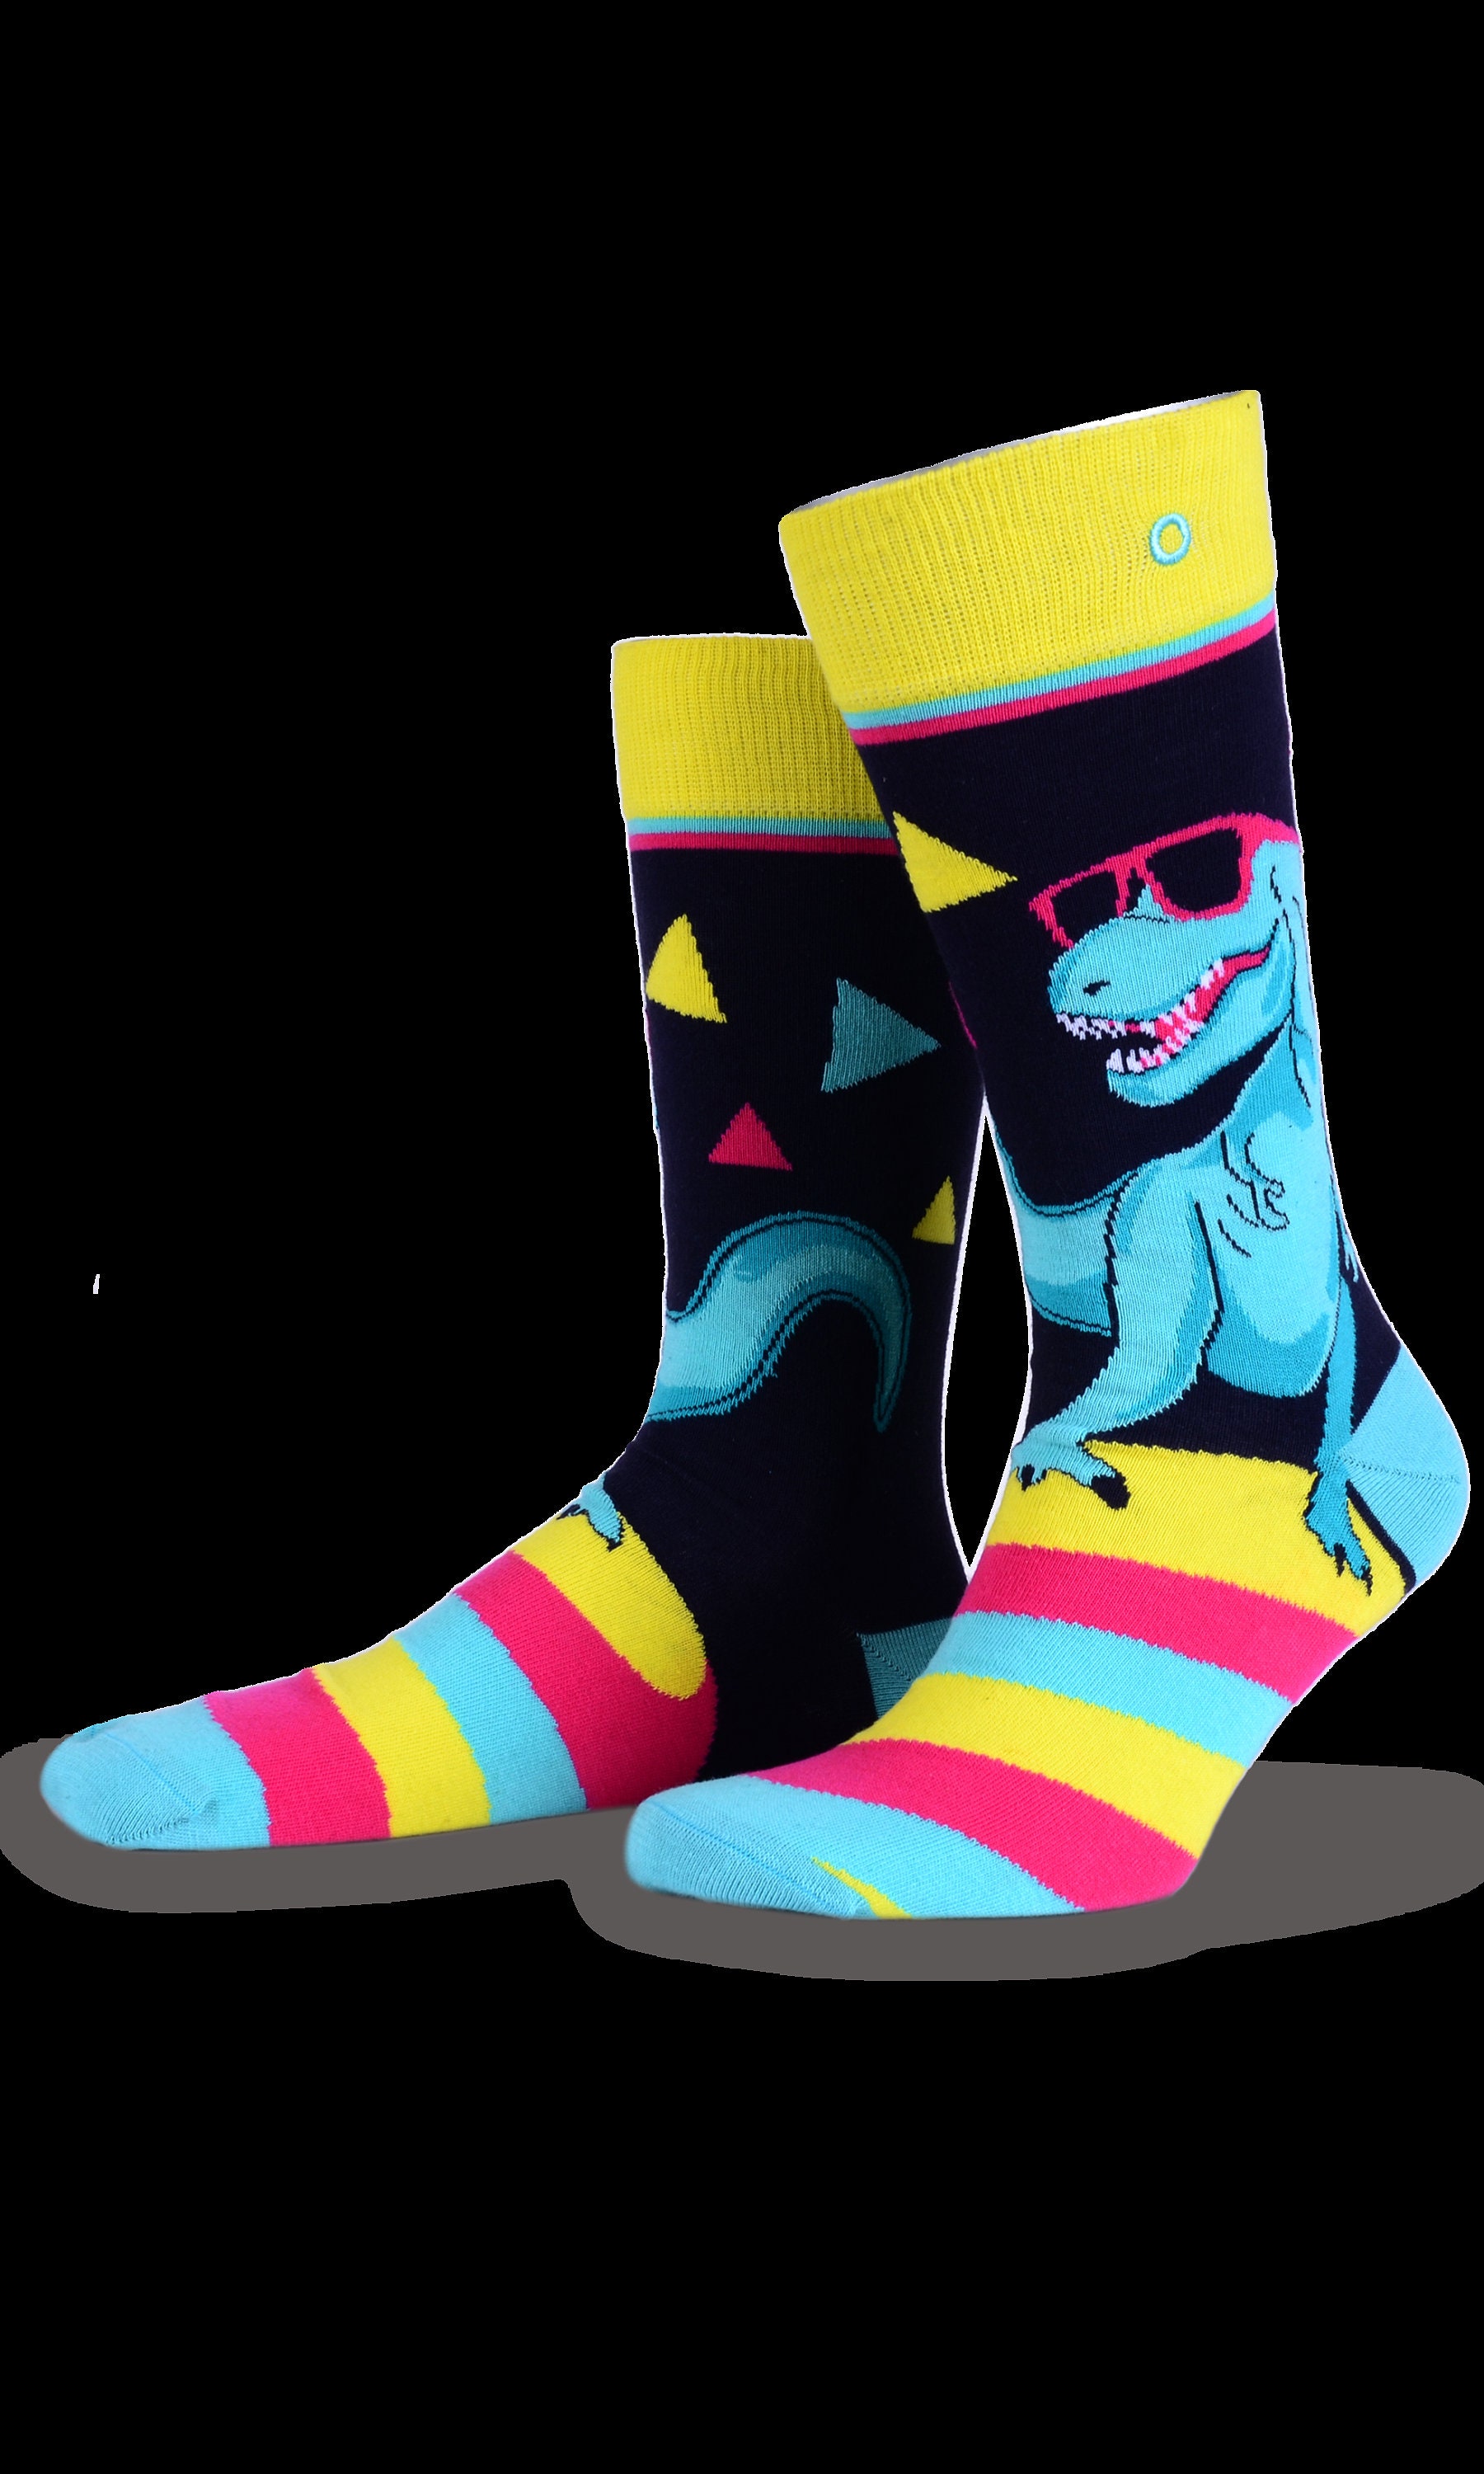 Dinosaur T - Rex Cotton Socks | Gift Idea Funky Funny Cute Skateboard UK Size 7-11